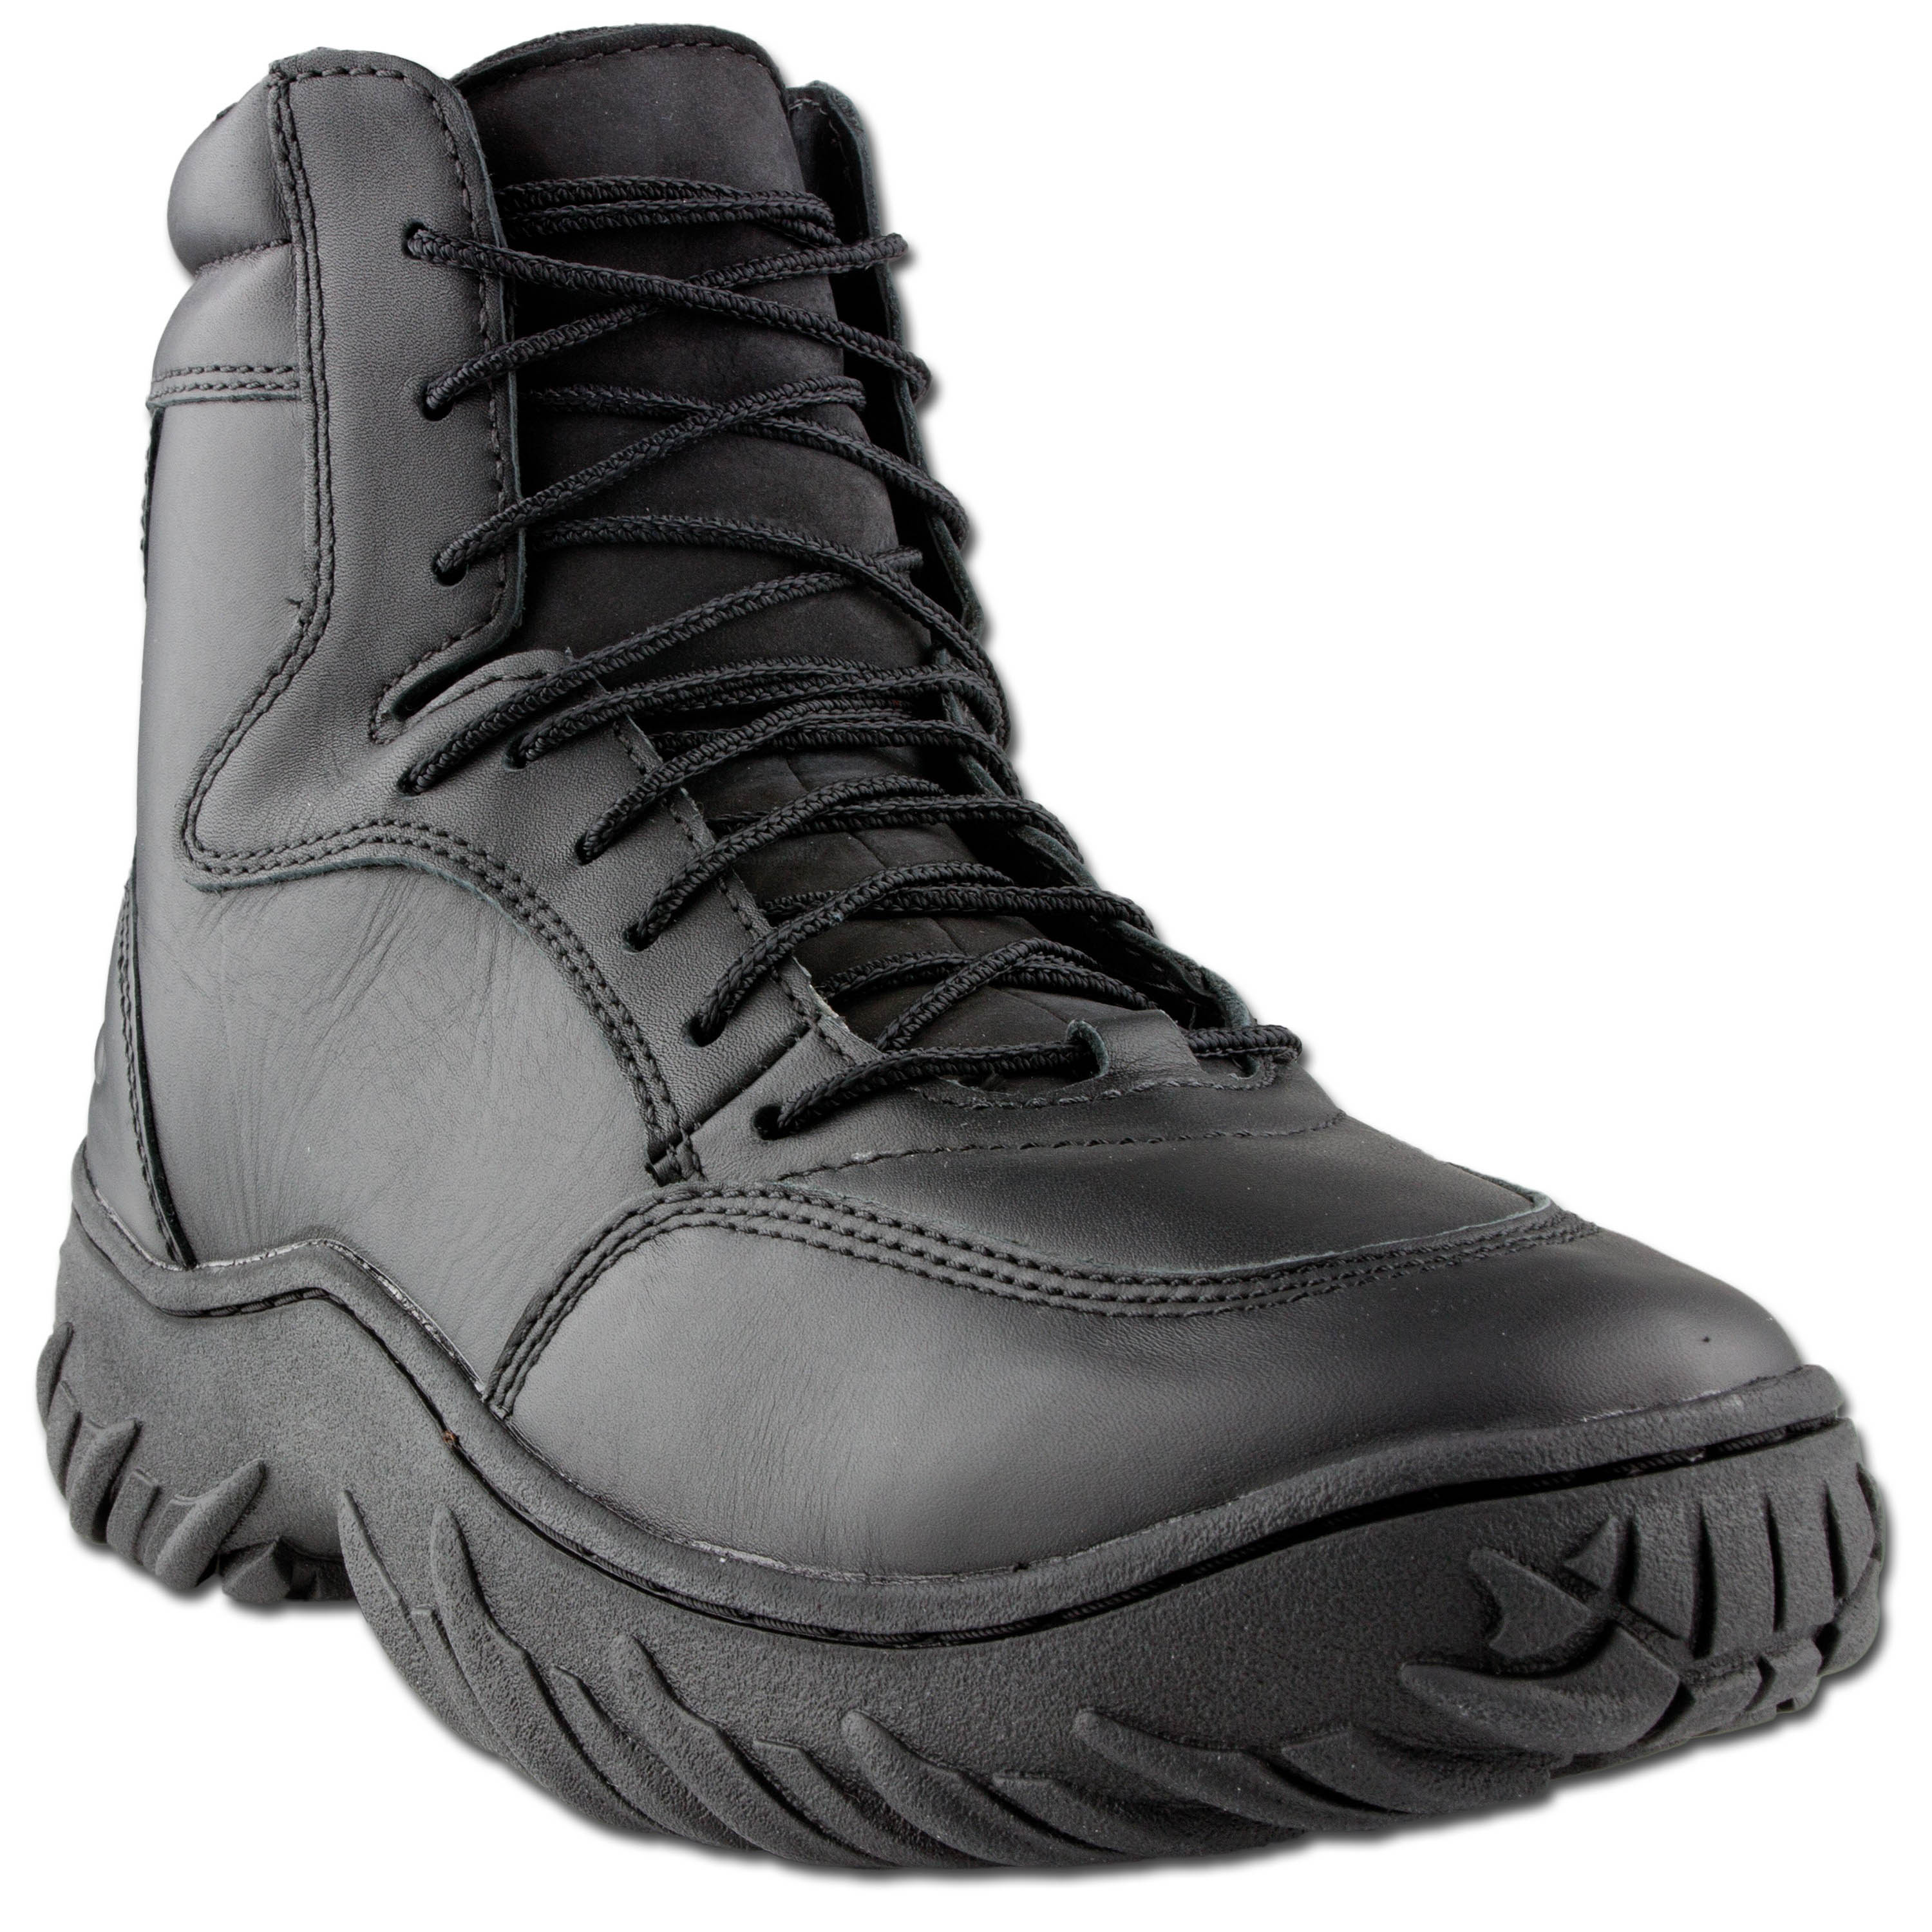 oakley combat shoes